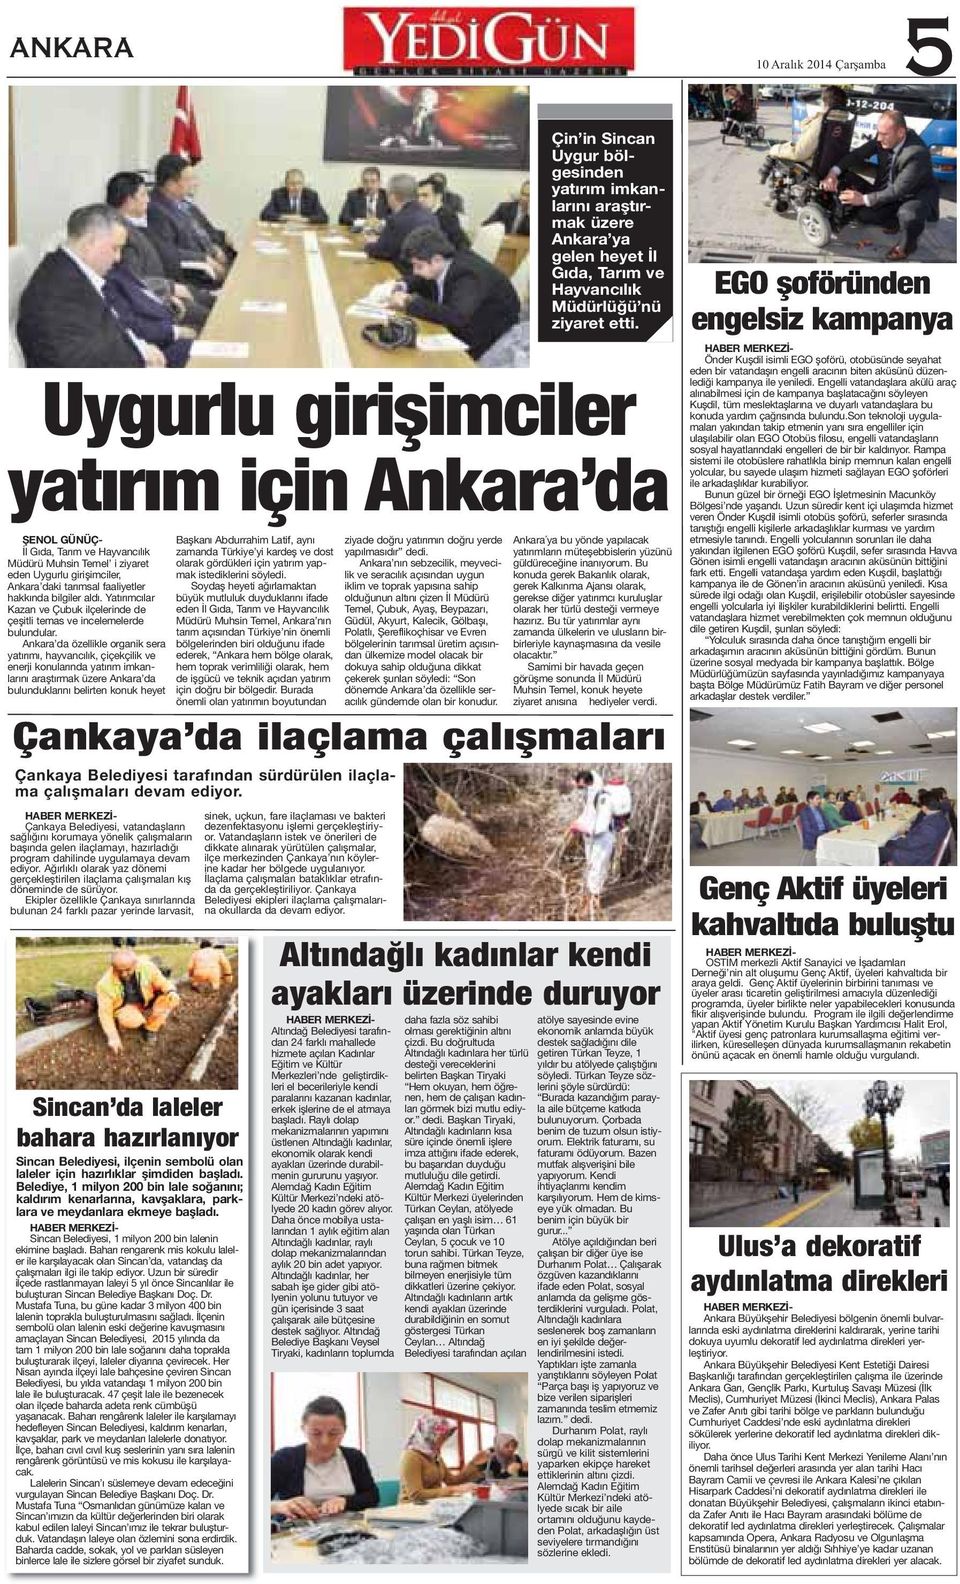 Ankara da özellikle organik sera yatırımı, hayvancılık, çiçekçilik ve enerji konularında yatırım imkanlarını araştırmak üzere Ankara da bulunduklarını belirten konuk heyet Çankaya Belediyesi